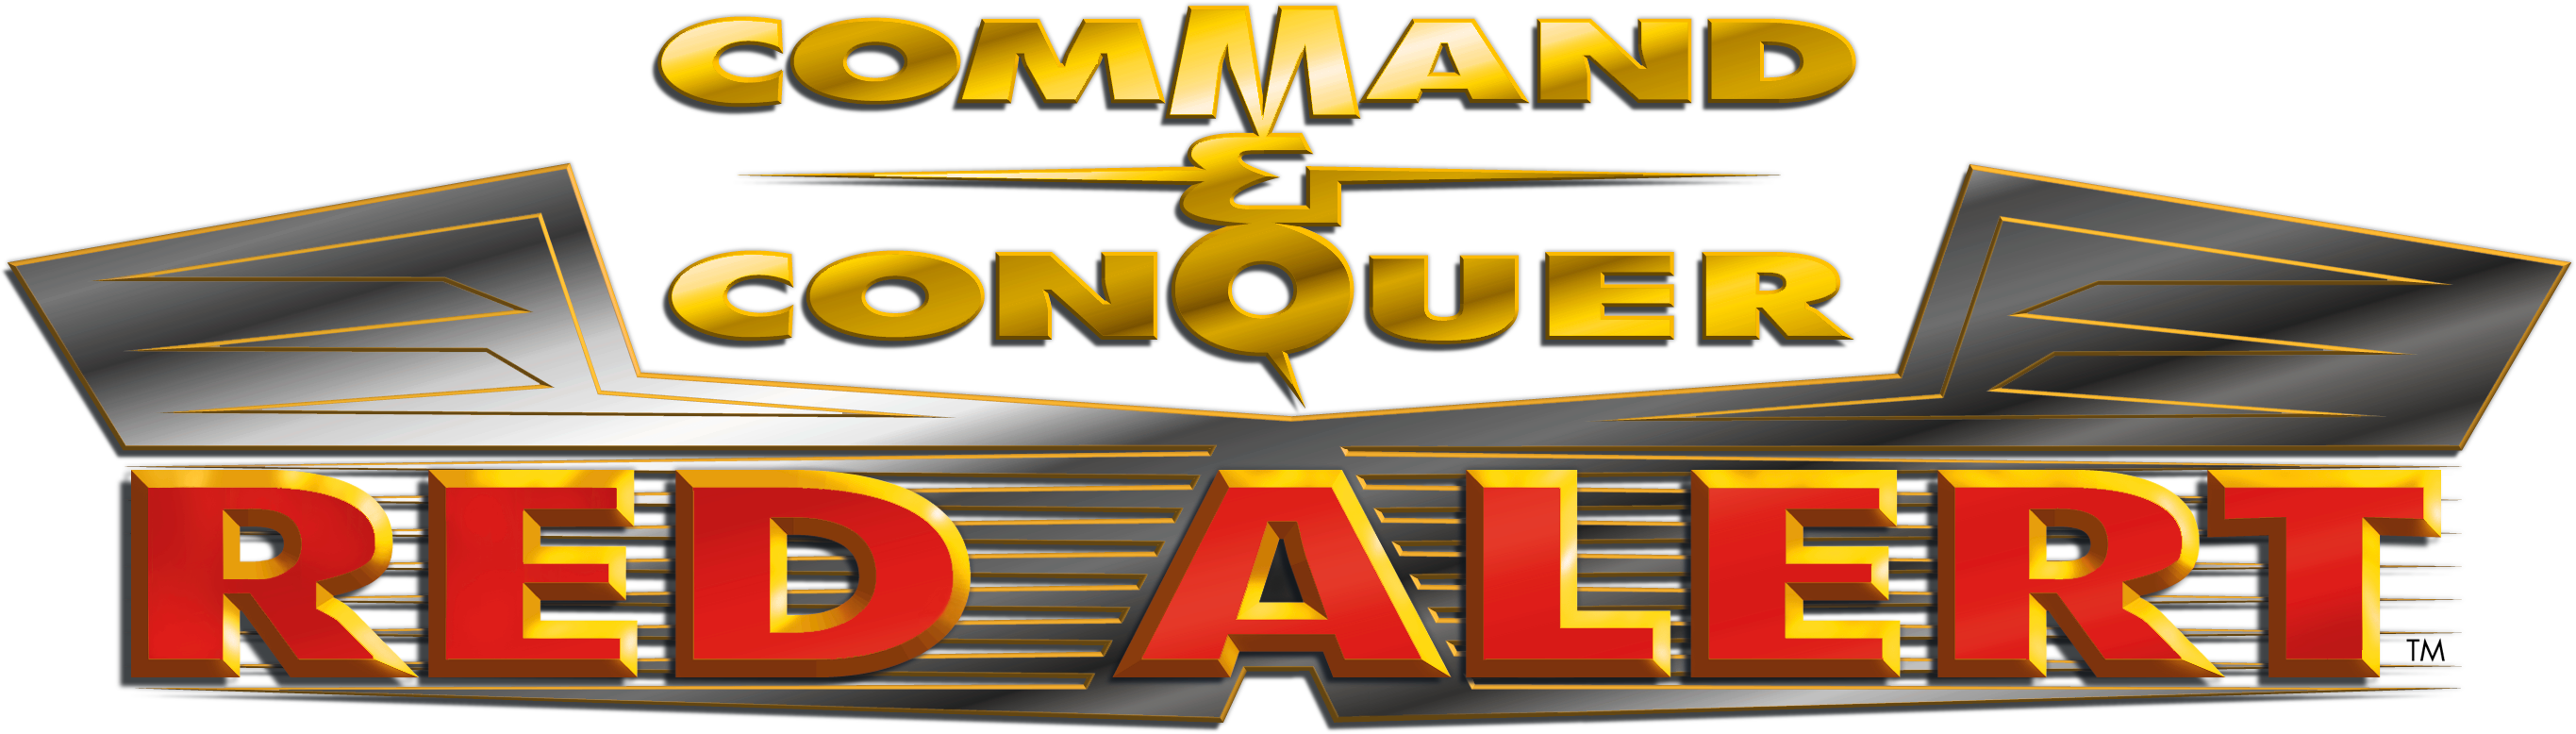 Command And Conquer Logo Transparent Image